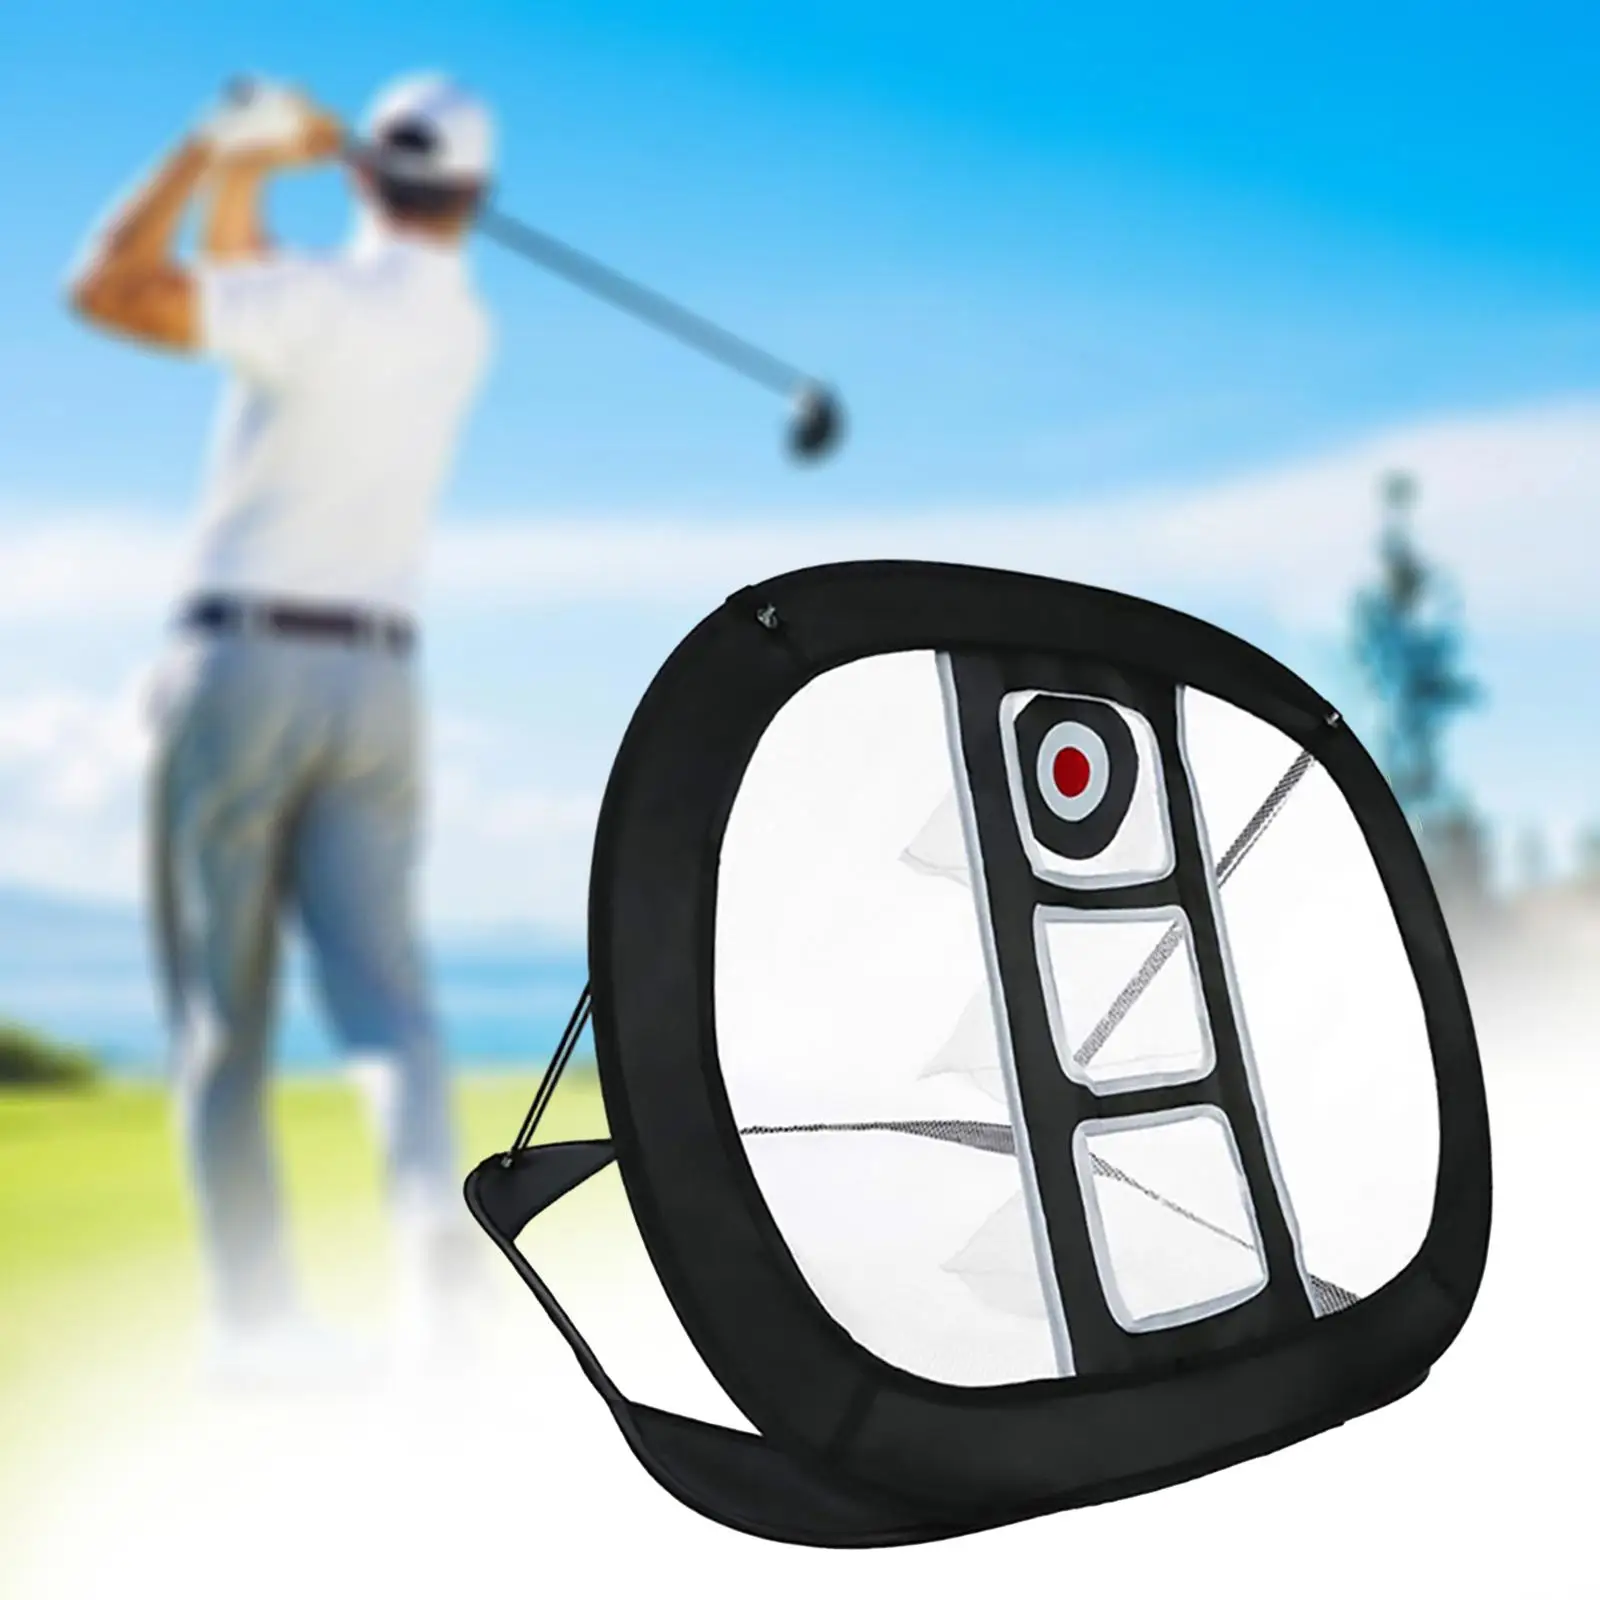 

Golf Chipping Net Golf Hitting Net Golfing Target Net Easy Setup Folding Golf Practice Net for Swing Practice Golf Training Net